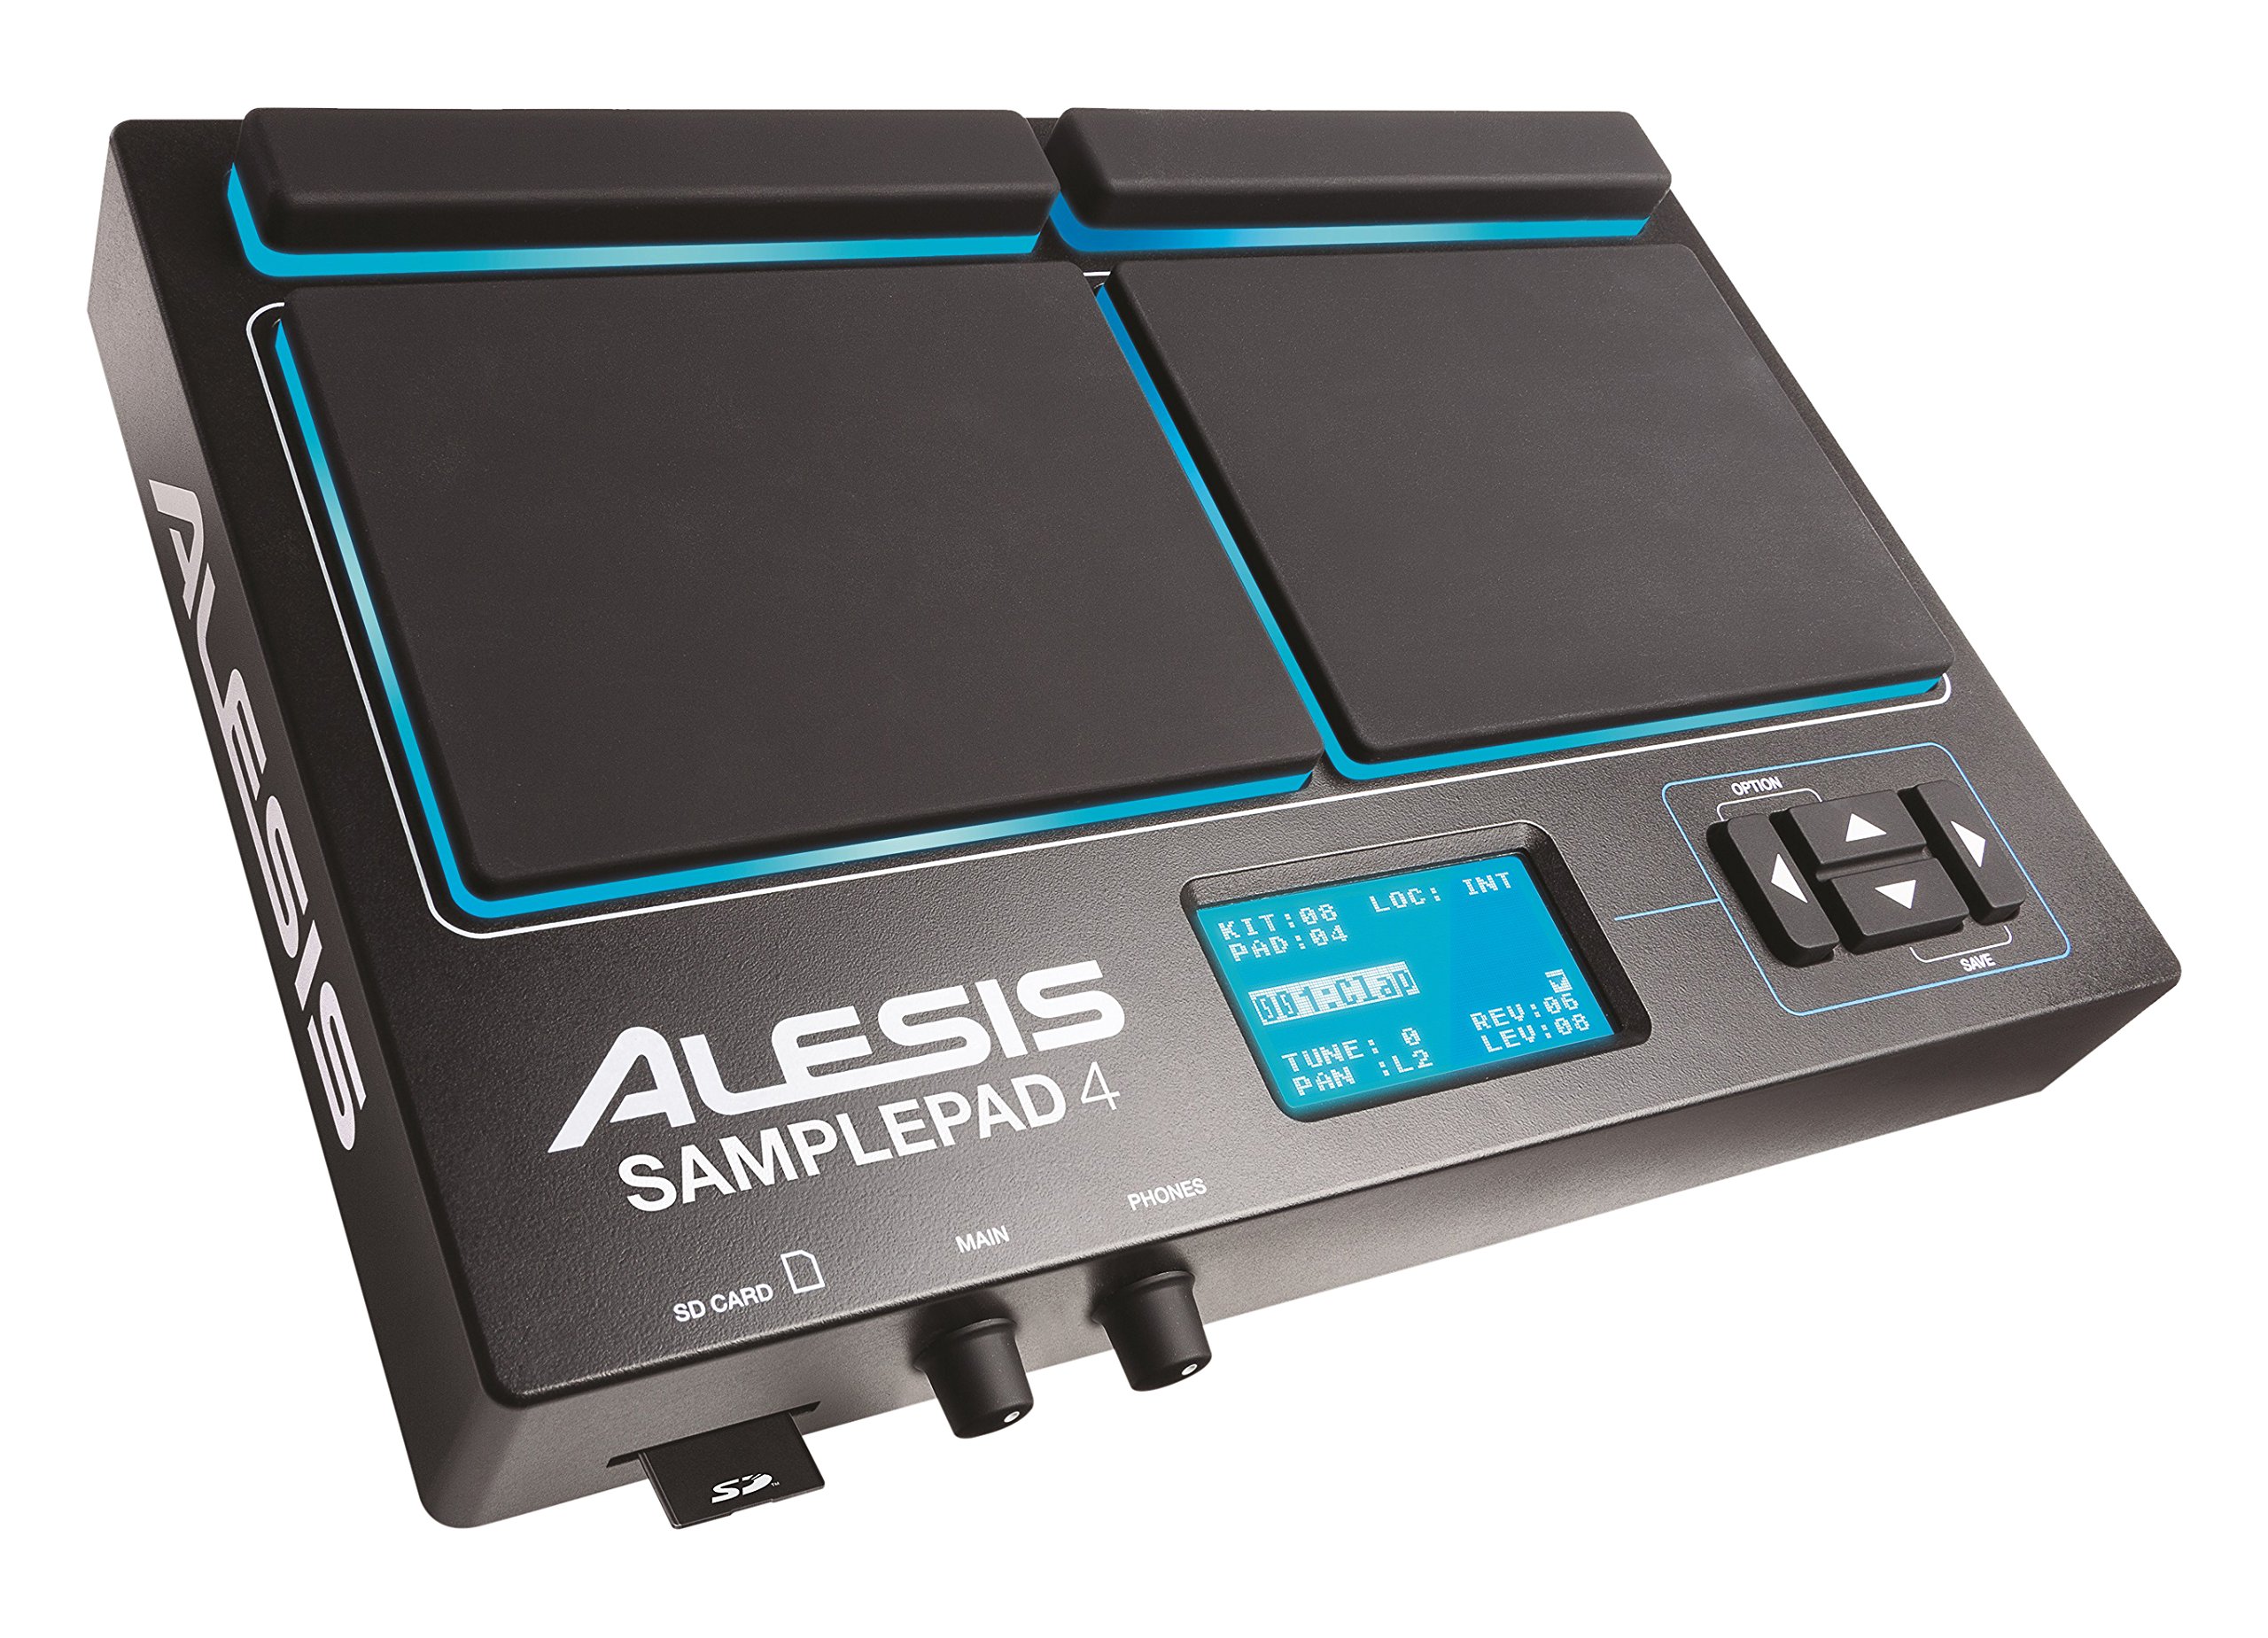 Alesis لوحة العينة 4 | آلة نقر وعينة مدمجة مع 4 وسادات حساسة للسرعة و 25 صوتًا للطبل وفتحة بطاقة SD / SDHC